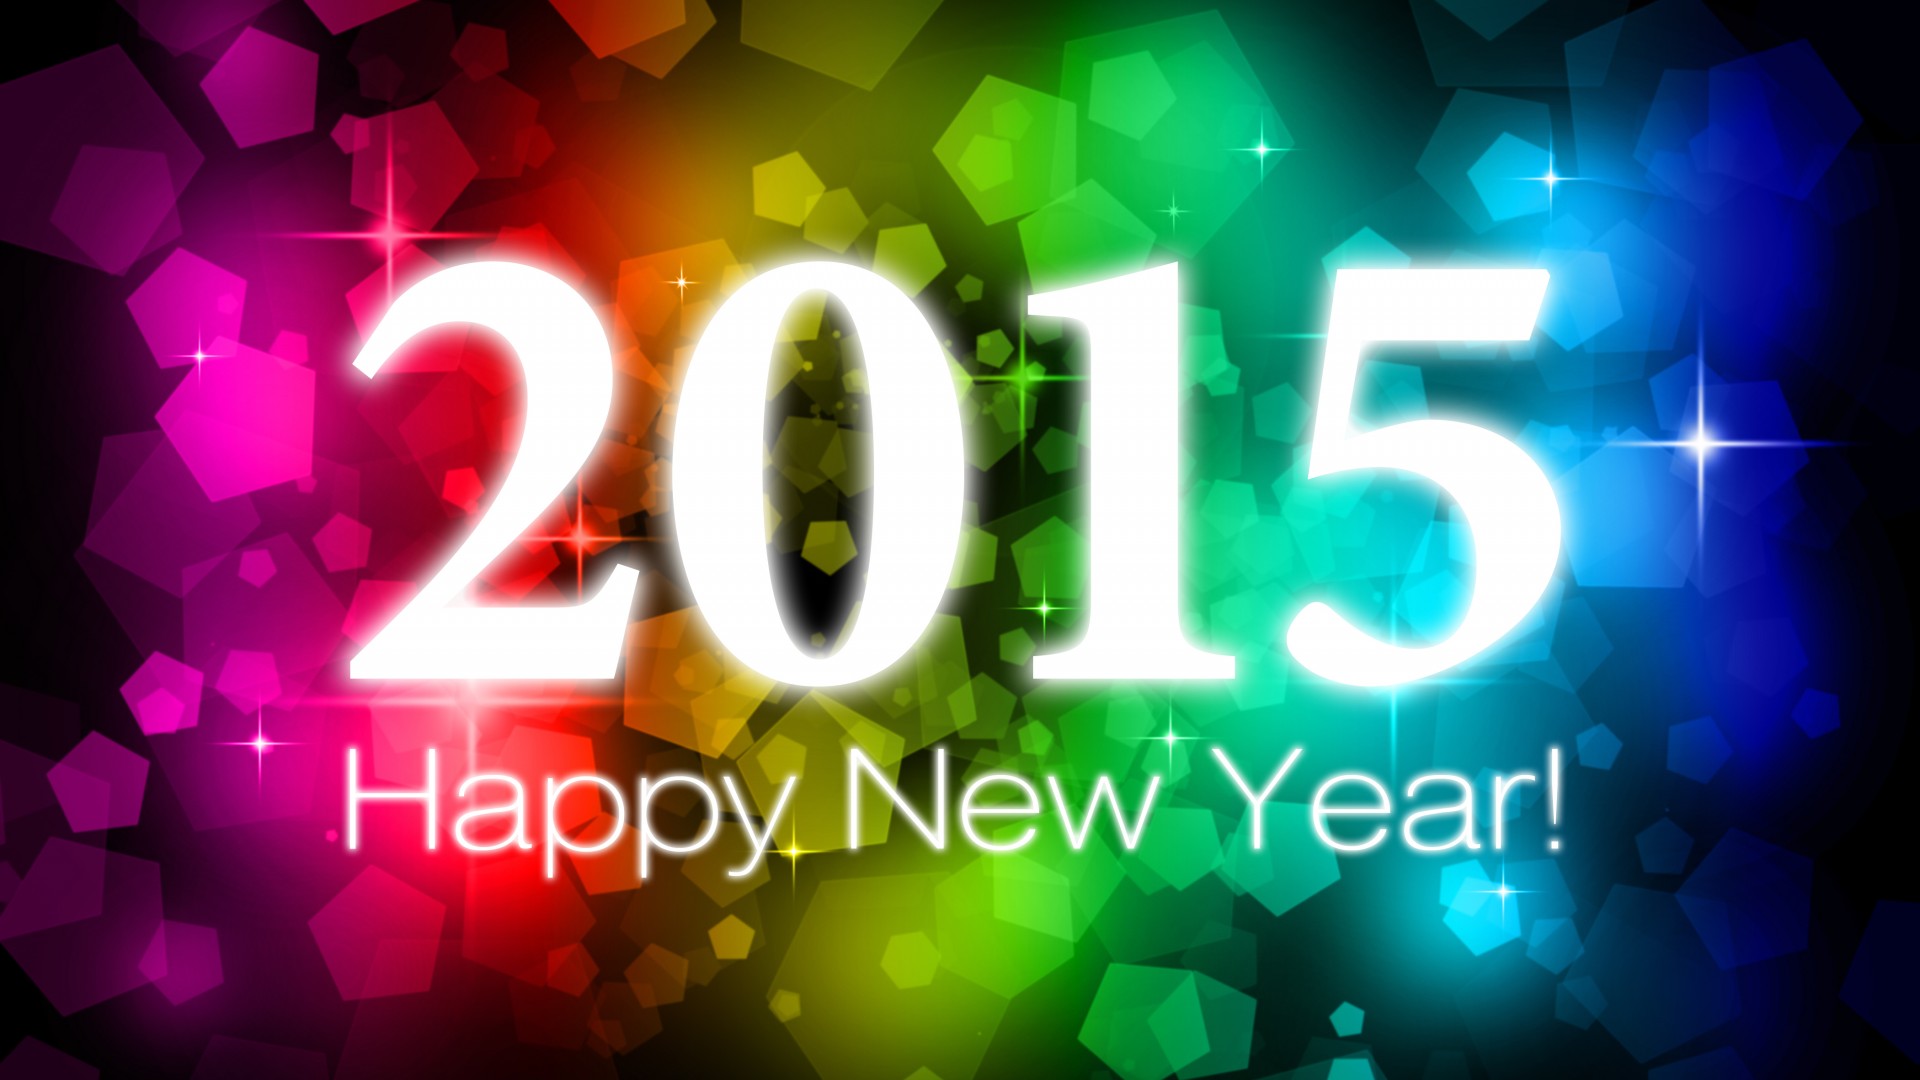 新年快乐,2015年的图片,2015年绚丽多彩精美桌面壁纸